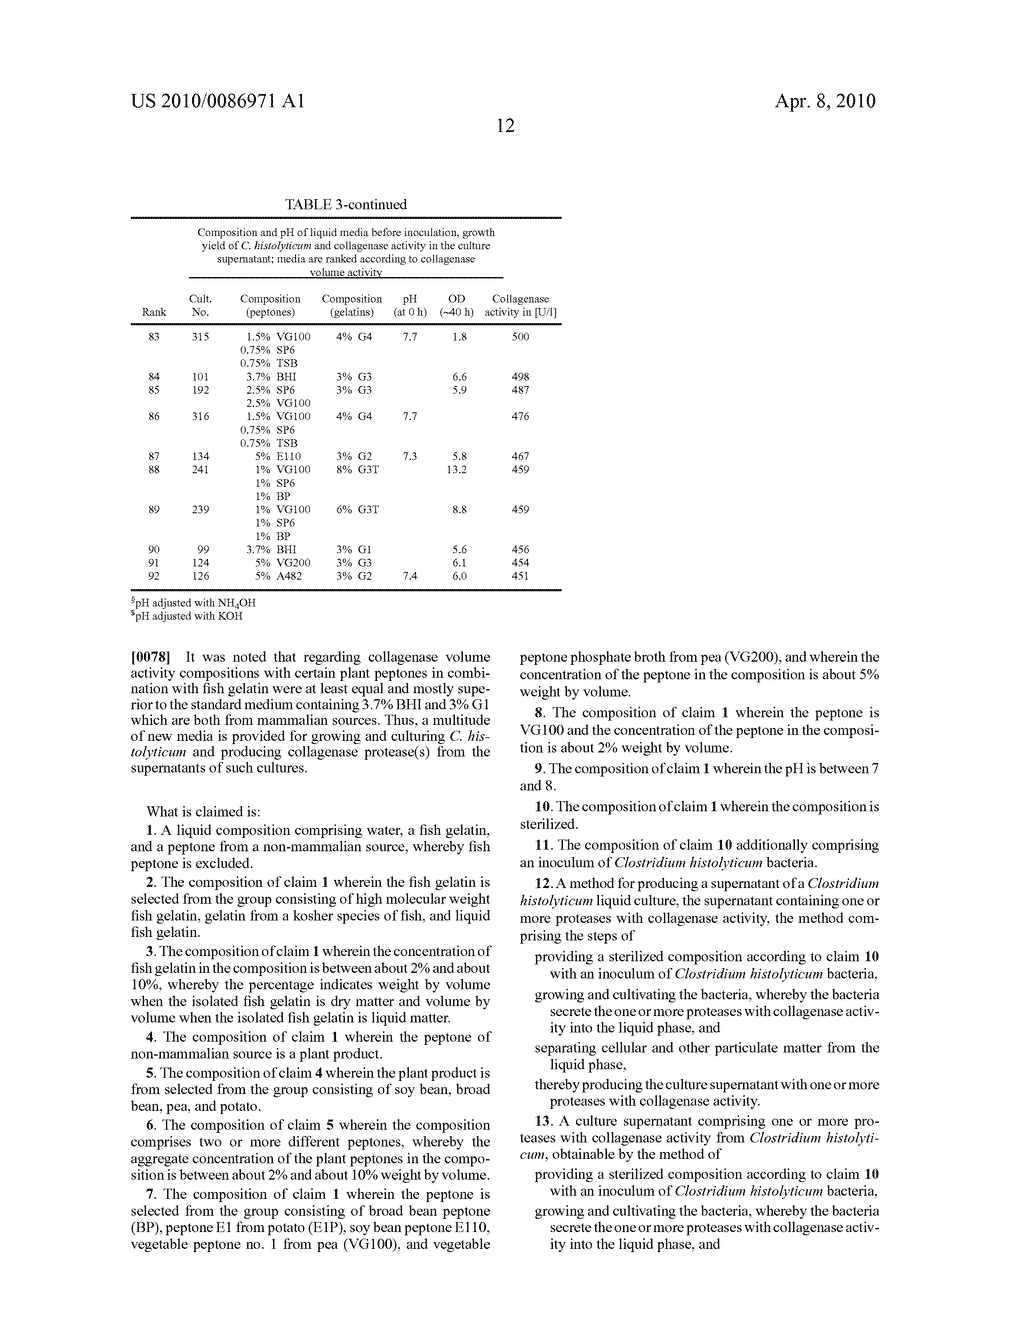 GROWTH MEDIUM FOR CLOSTRIDIUM HISTOLYTICUM - diagram, schematic, and image 13